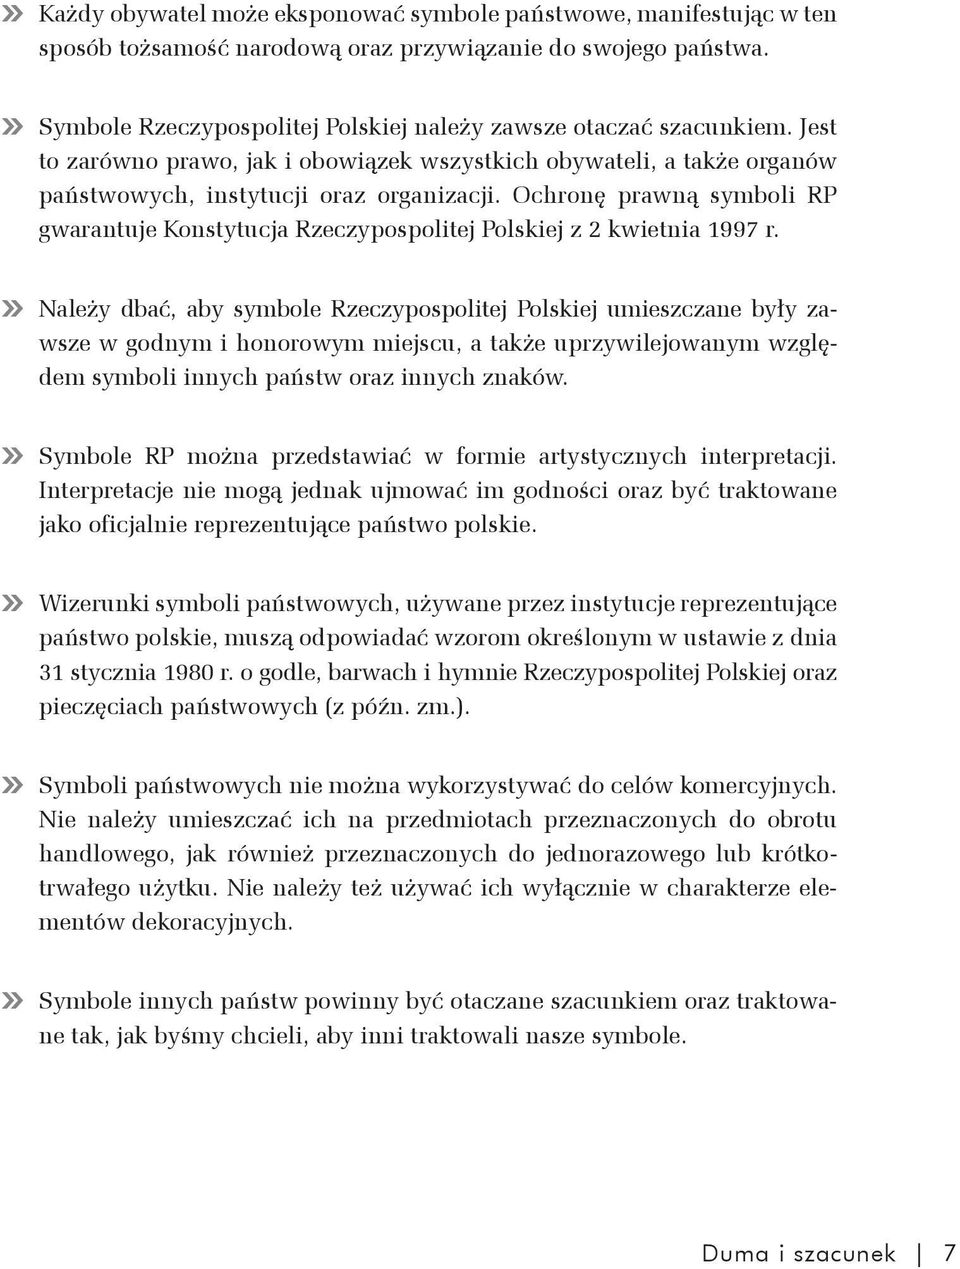 Ochronę prawną symboli RP gwarantuje Konstytucja Rzeczypospolitej Polskiej z 2 kwietnia 1997 r.